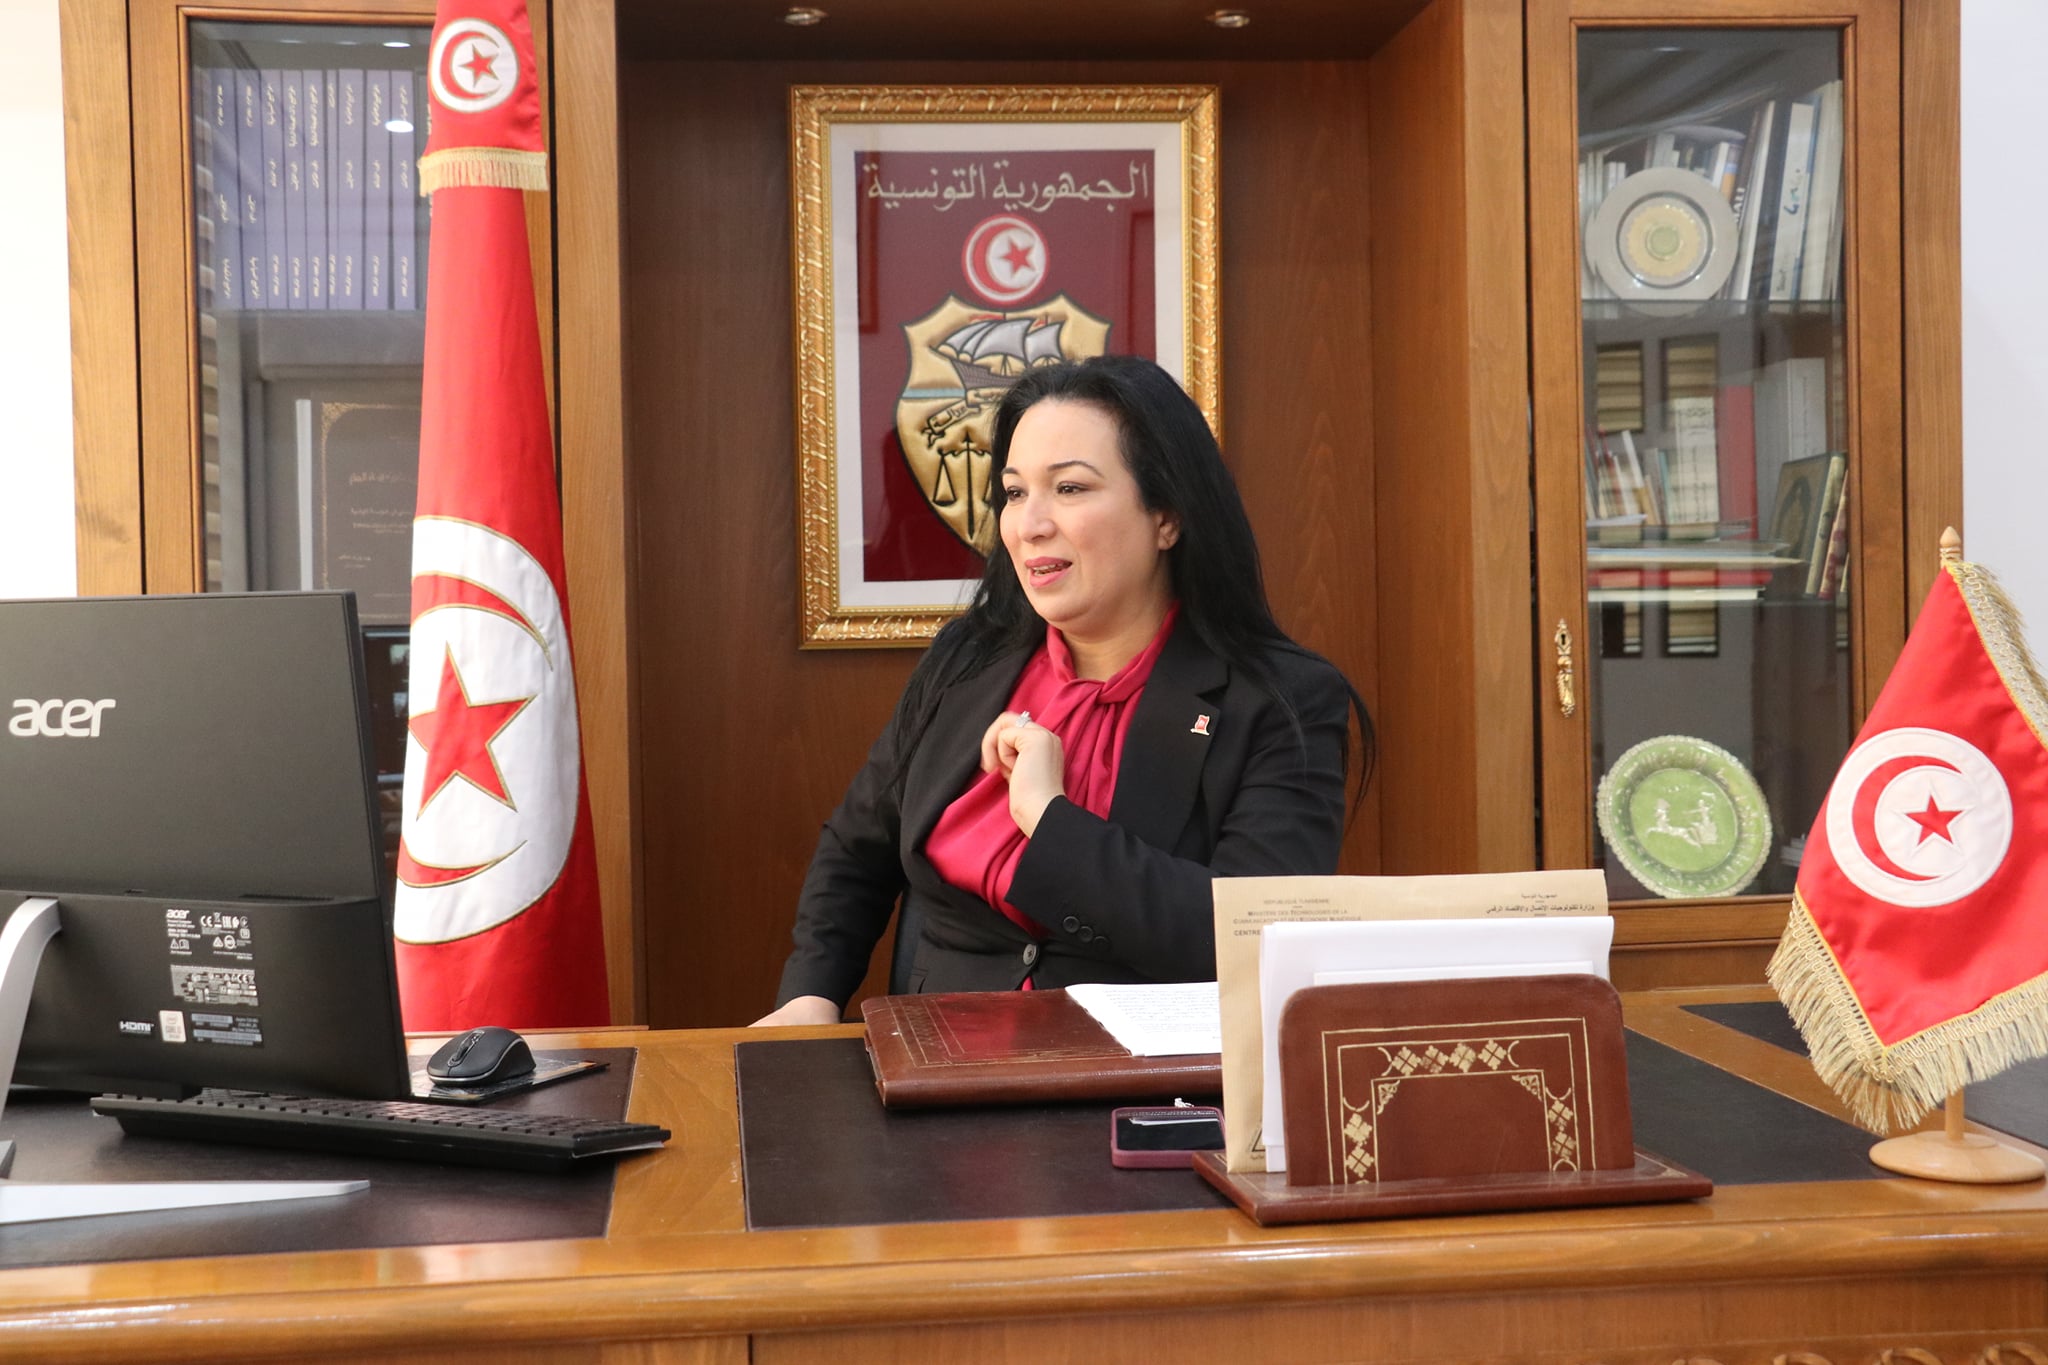 وزارة المرأة تطلق منصة إلكترونية لبرنامج “رائدات”